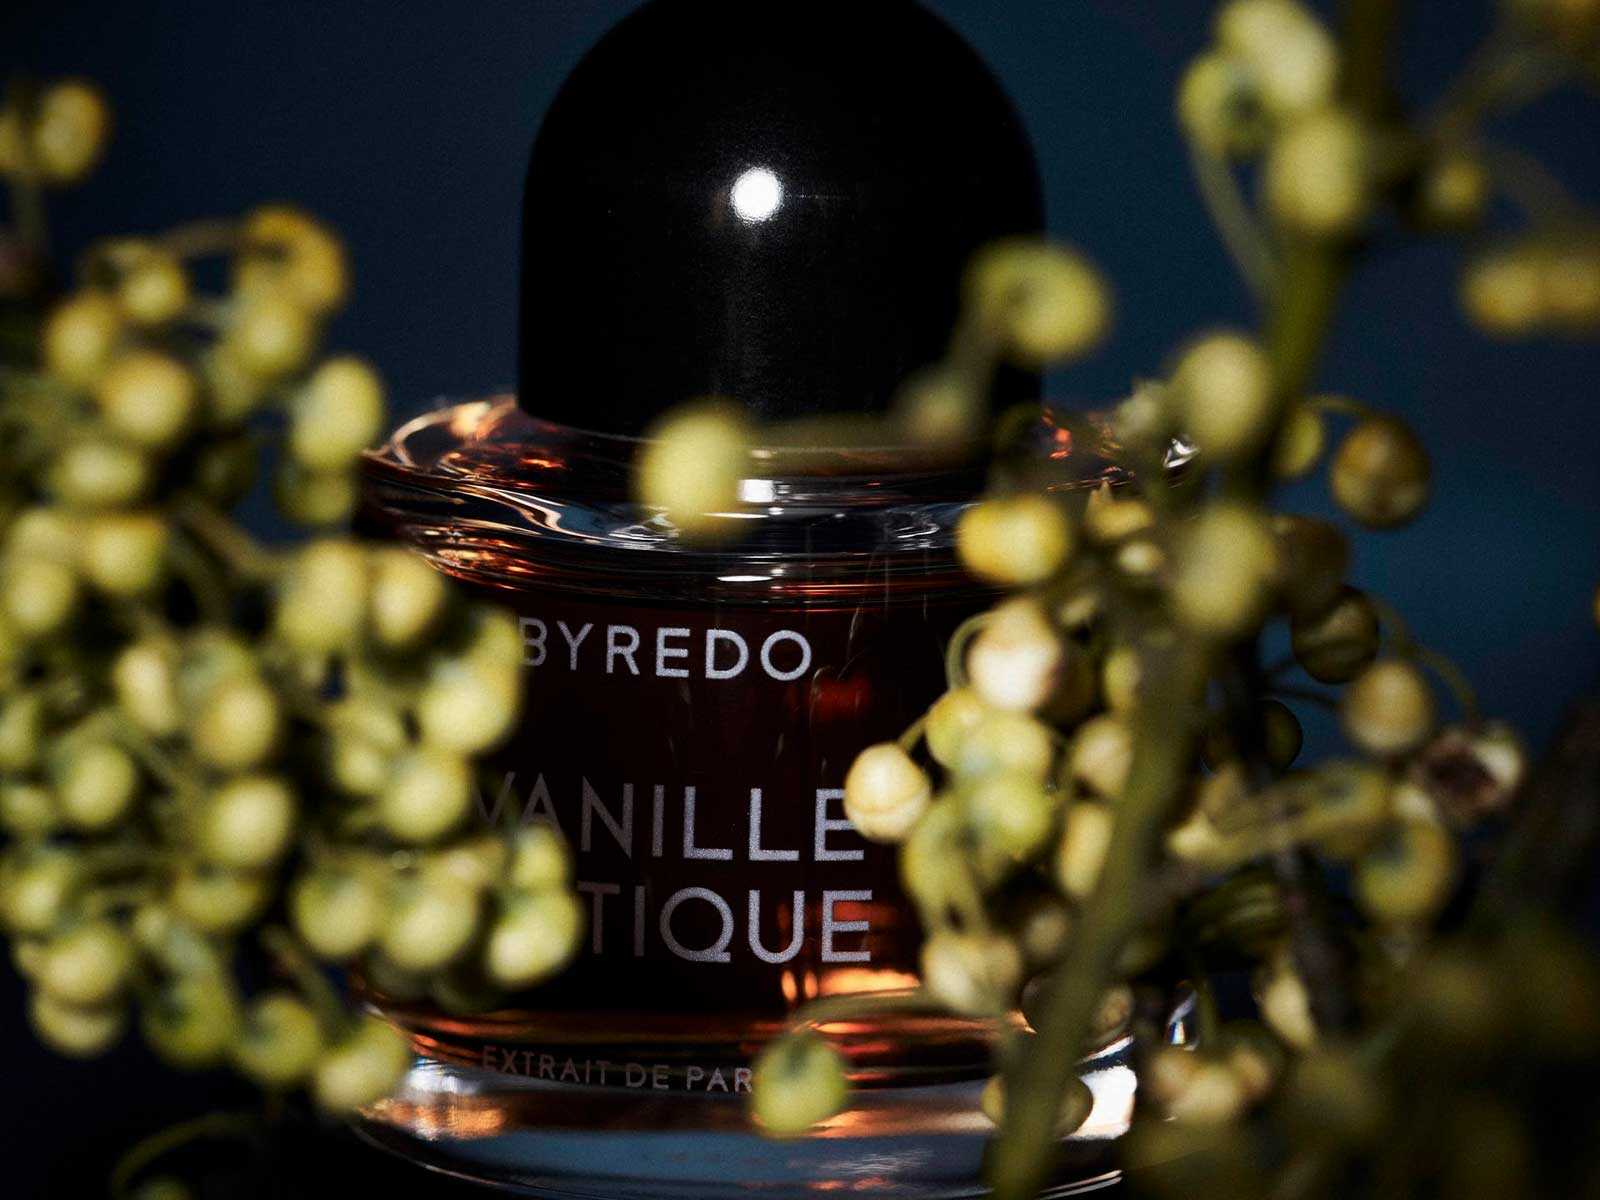 Vanille Antique es la última fragancia de la colección Night Veils de Byredo